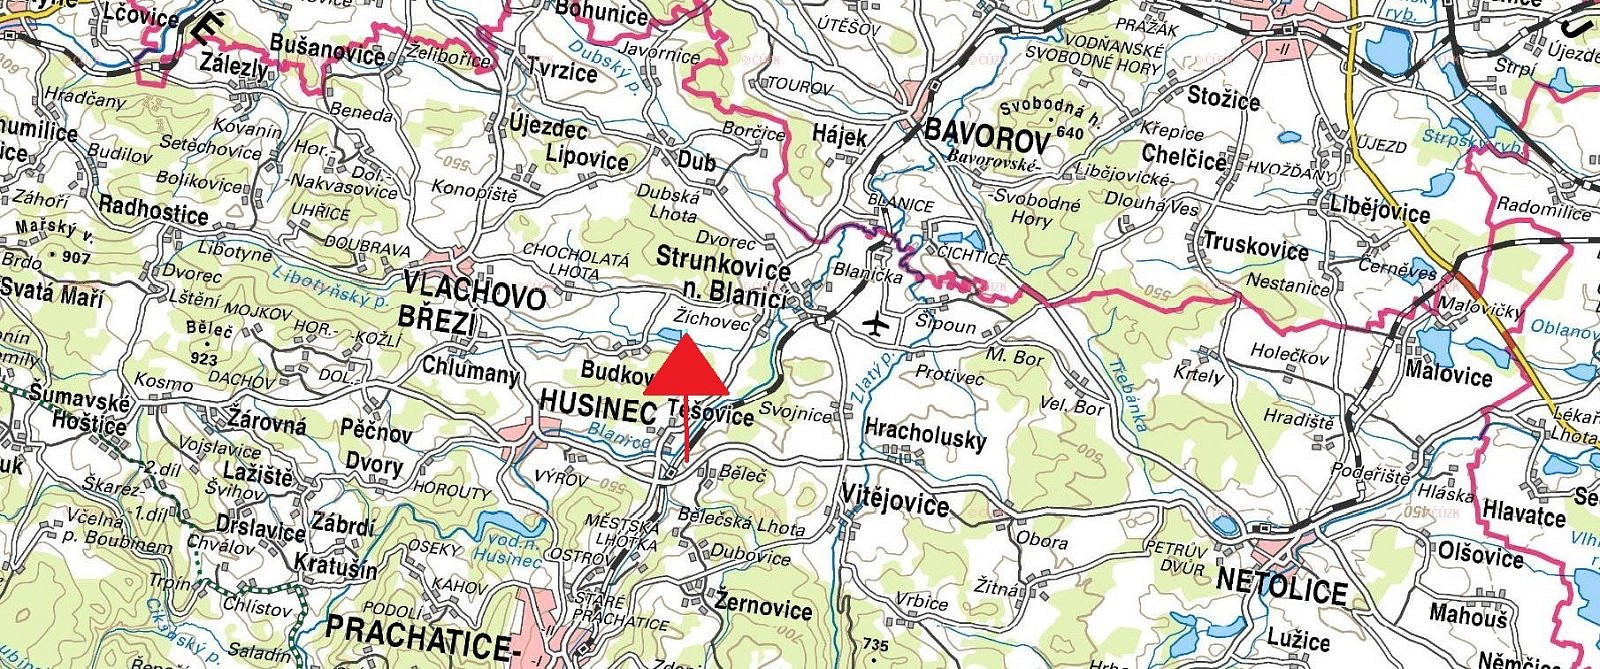 Strunkovice nad Blanicí - Žíchovec, okres Prachatice